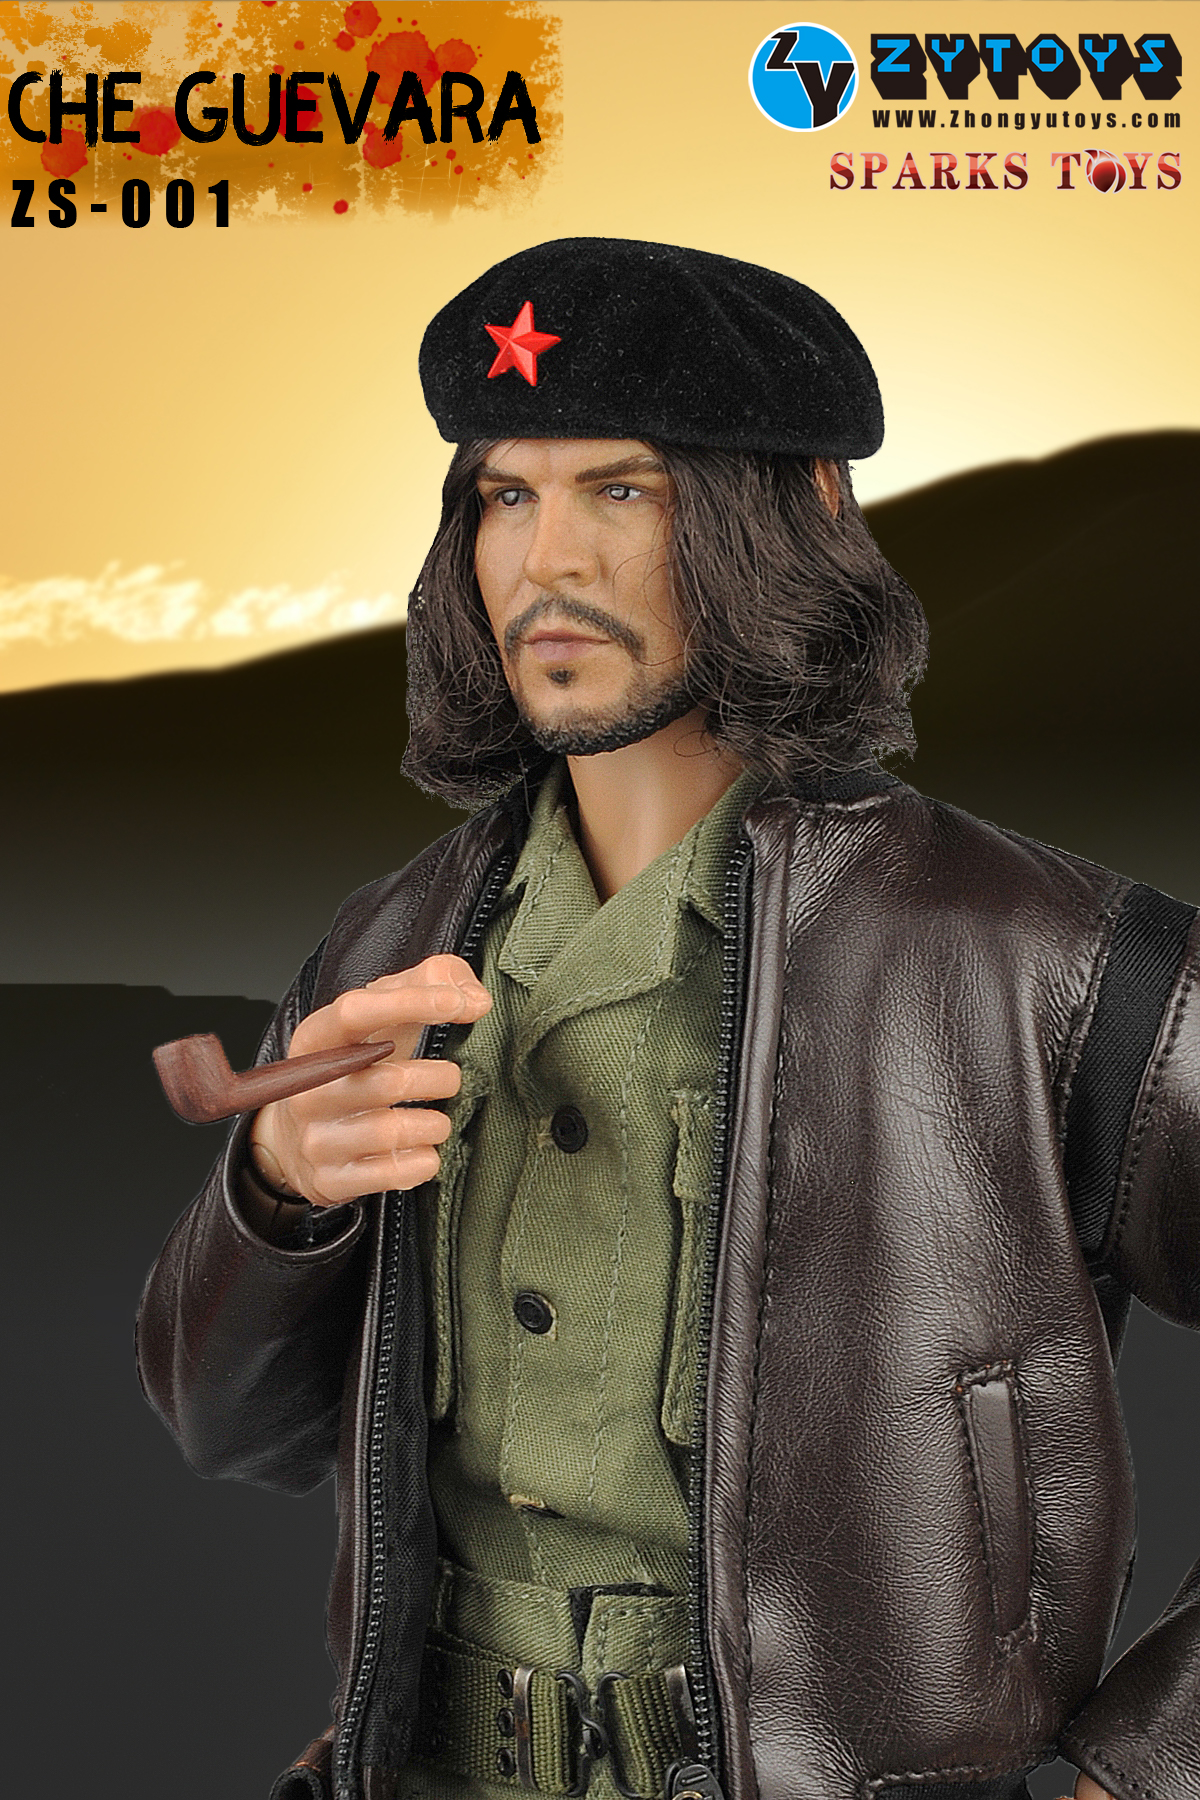 ZS-001 1/6比例 切古华拉 Che Guevara 双头雕可动人偶 (图5)